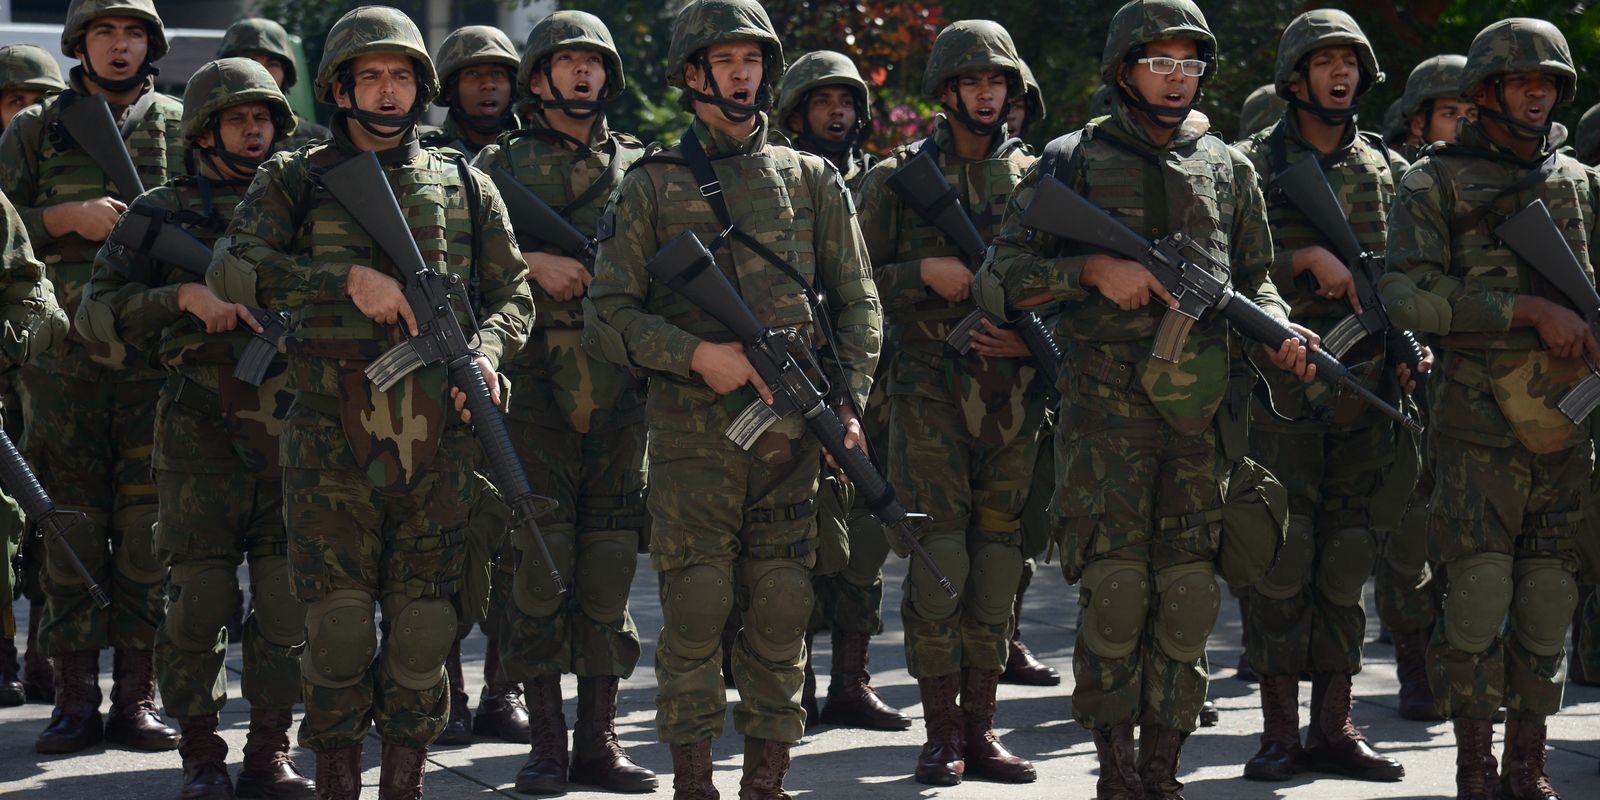 Brasil usará 25 mil militares em ação inédita em fronteiras - BBC